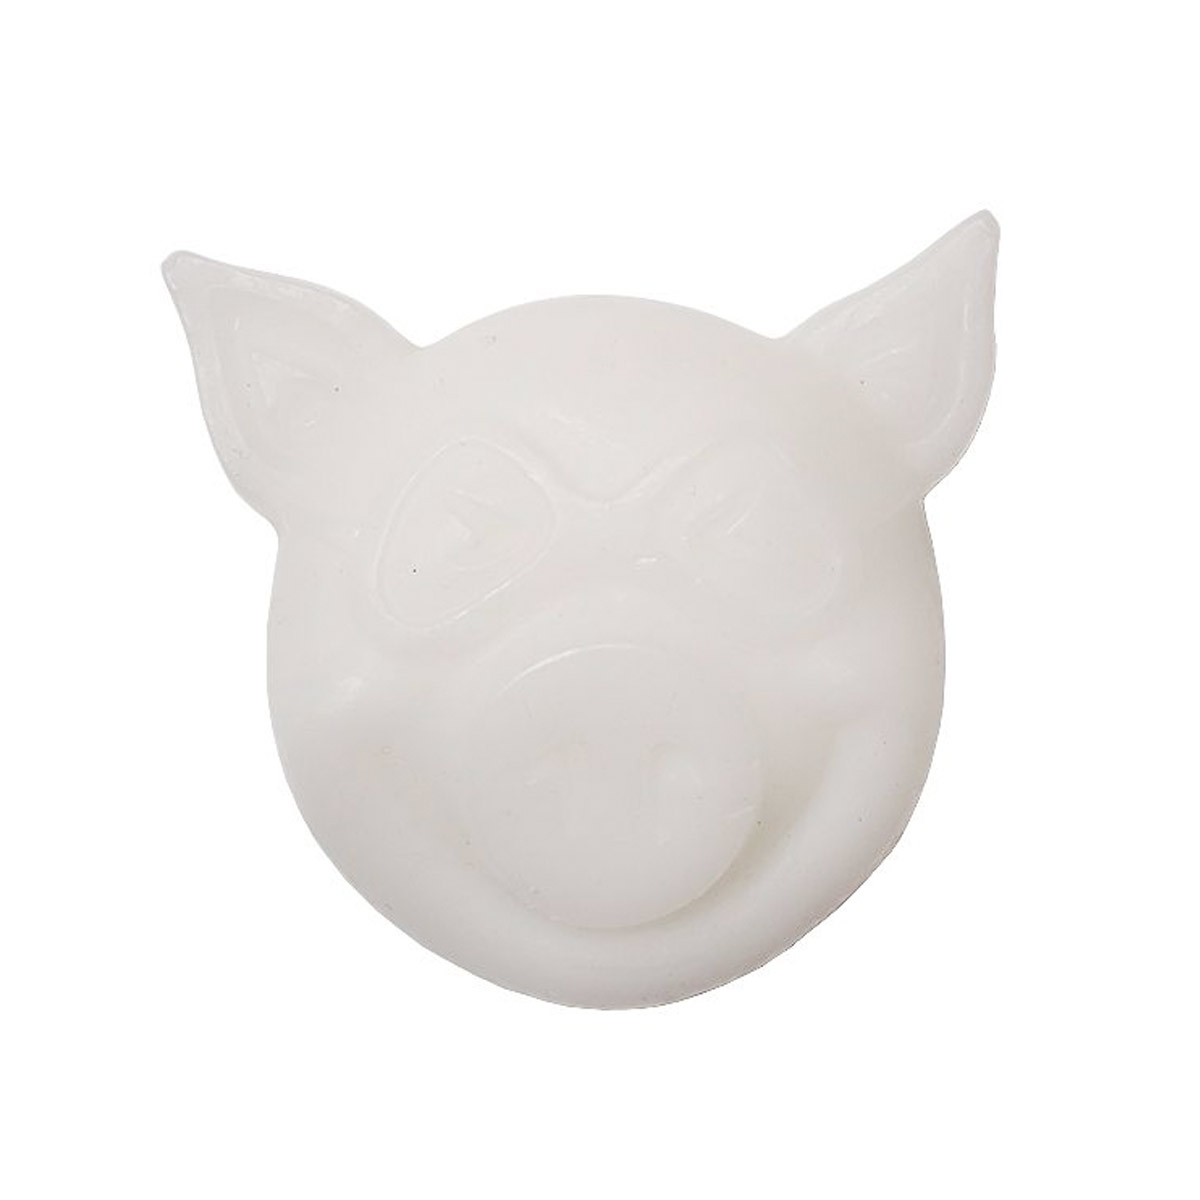 Pig Skatewachs Pig Head Curb Wax (white)